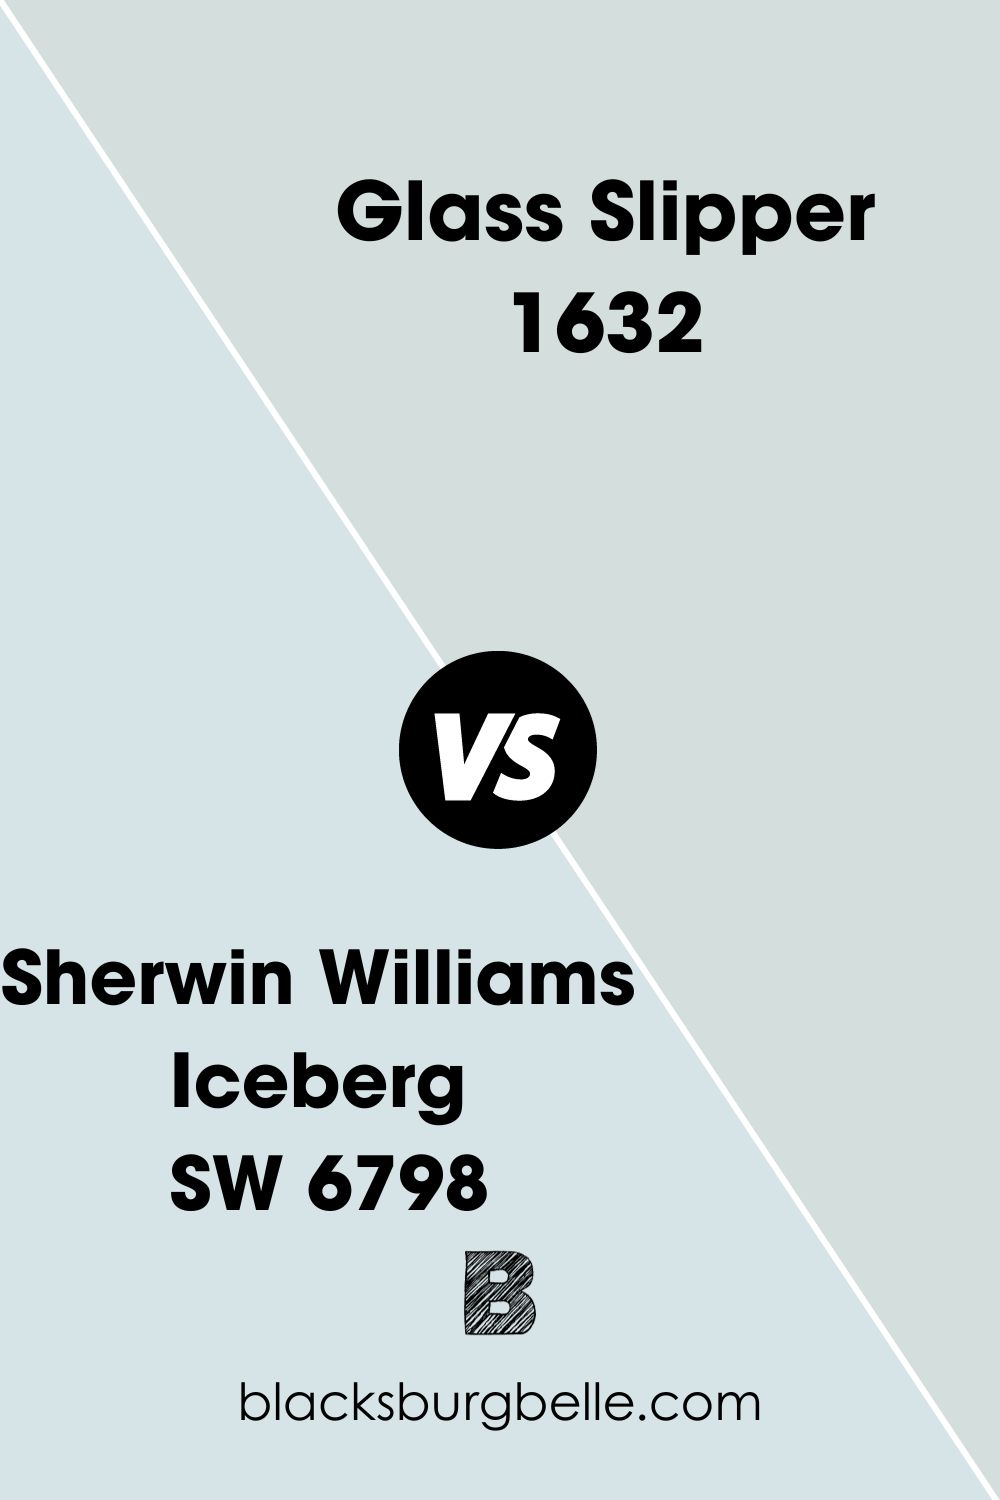 Sherwin Williams Iceberg SW 6798